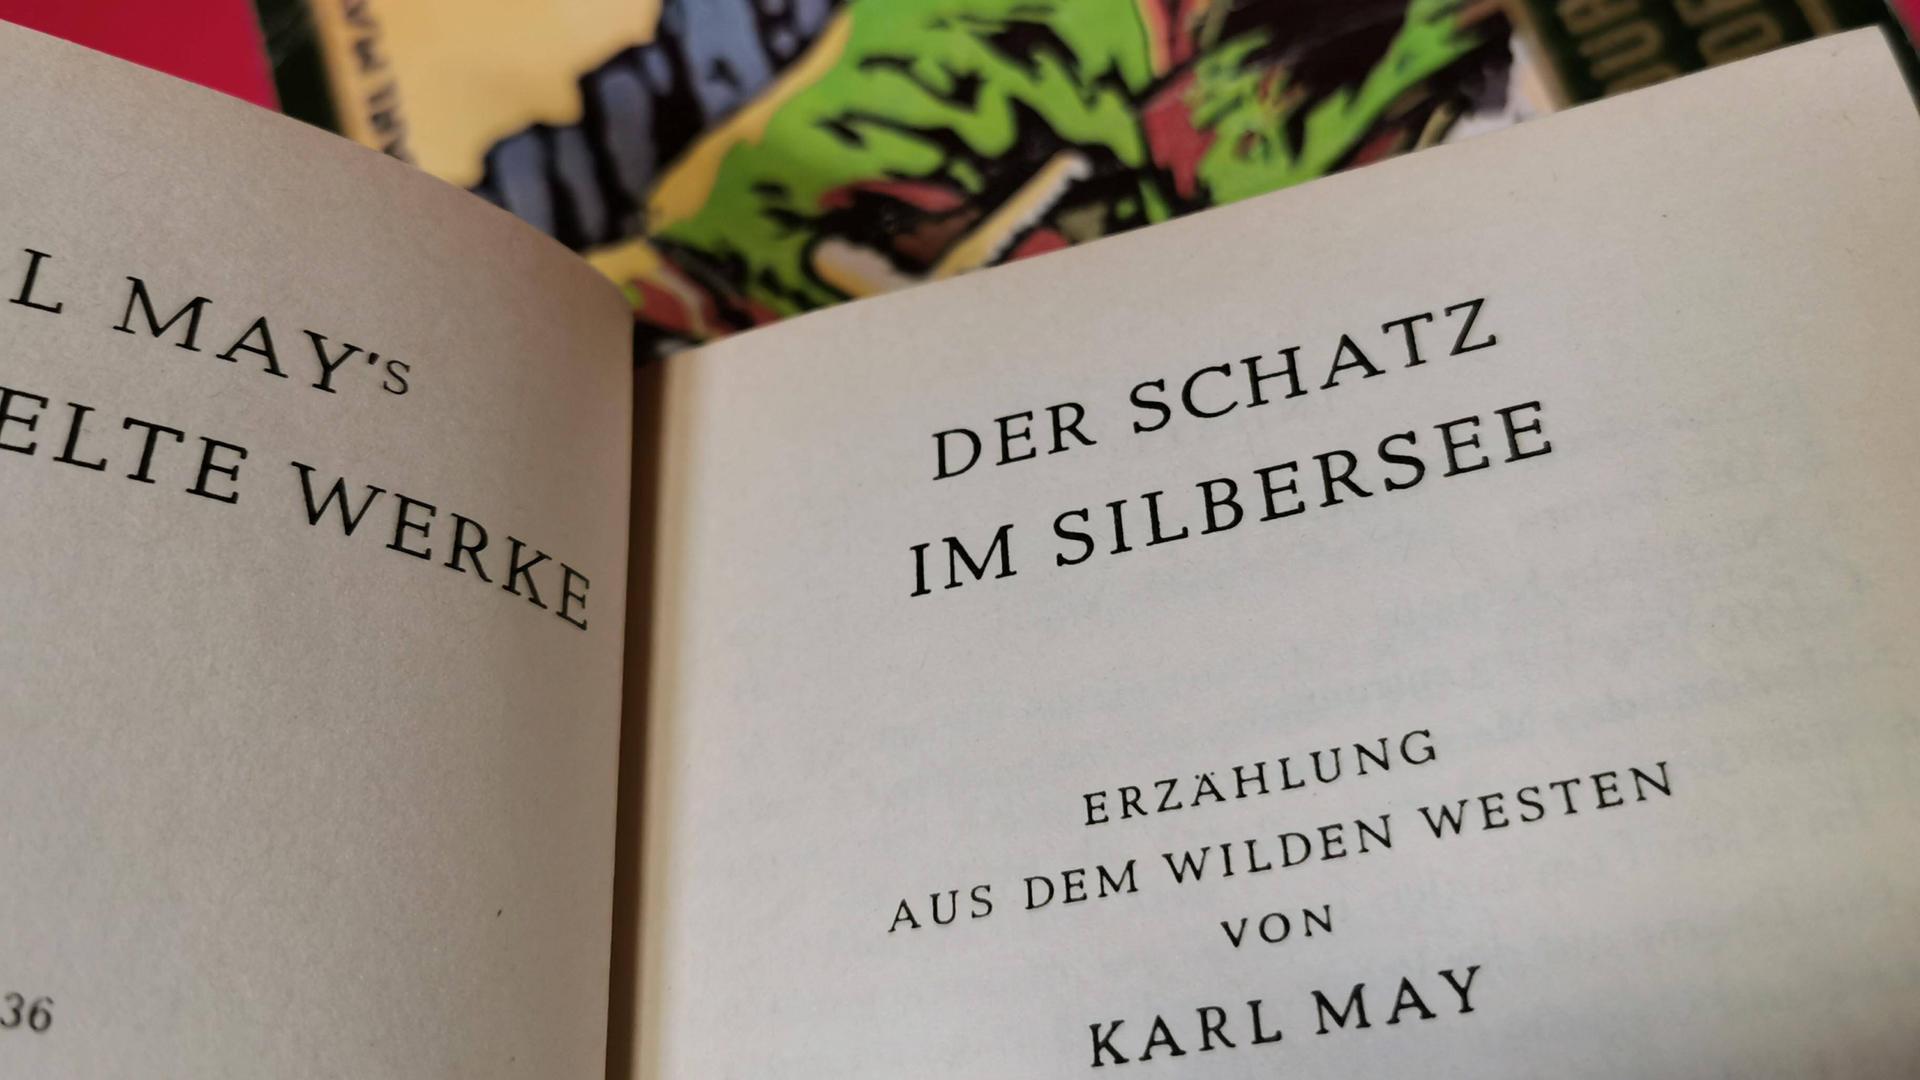 Karl May, der in Hohenstein-Ernstthal geboren wurde, gehört zu den meistgelesenen deutschen Schriftstellern, dessen weltweite Werksauflage auf 200 Millionen Bücher geschätzt wird